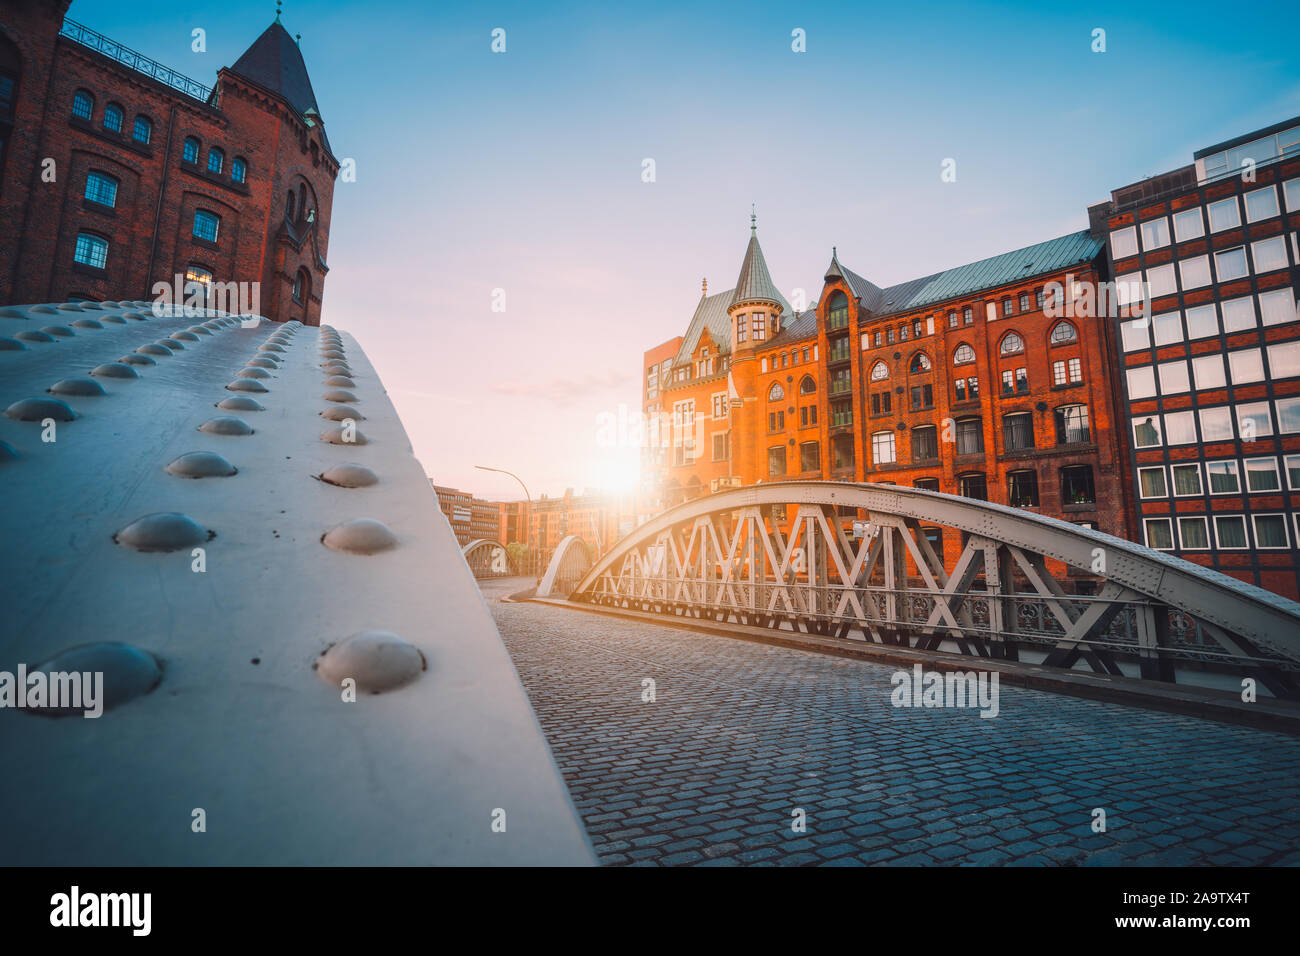 Arco de hierro puentes históricos en almacenes en distrito Speicherstad en Hamburgo, Alemania. Sun retroiluminado bengalas luminosas. Foto de stock